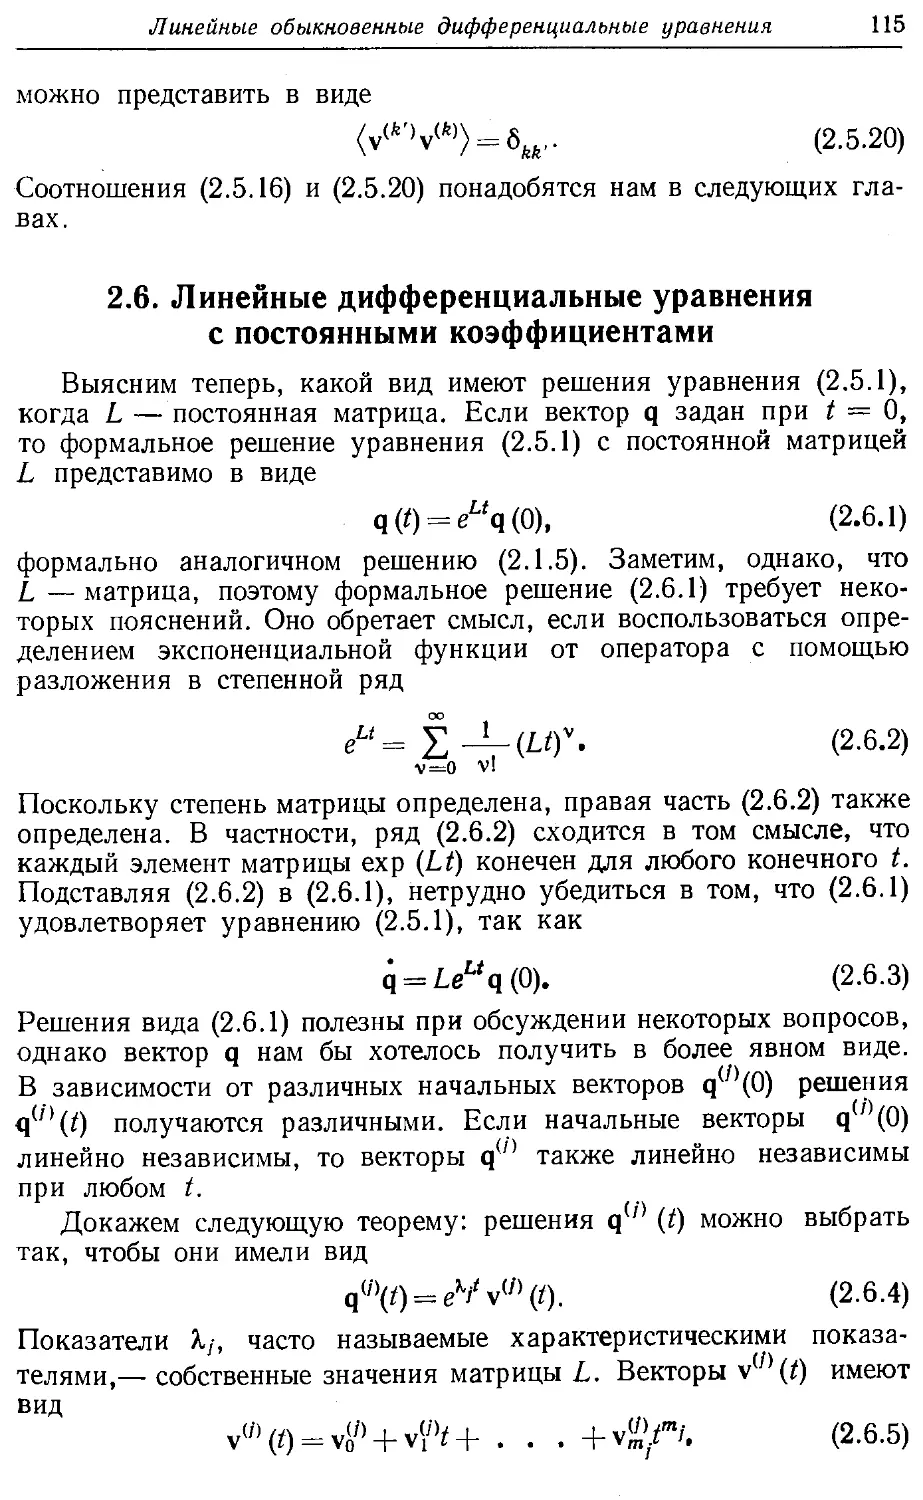 2.6. Линейные дифференциальные уравнения с постоянными коэффициентами